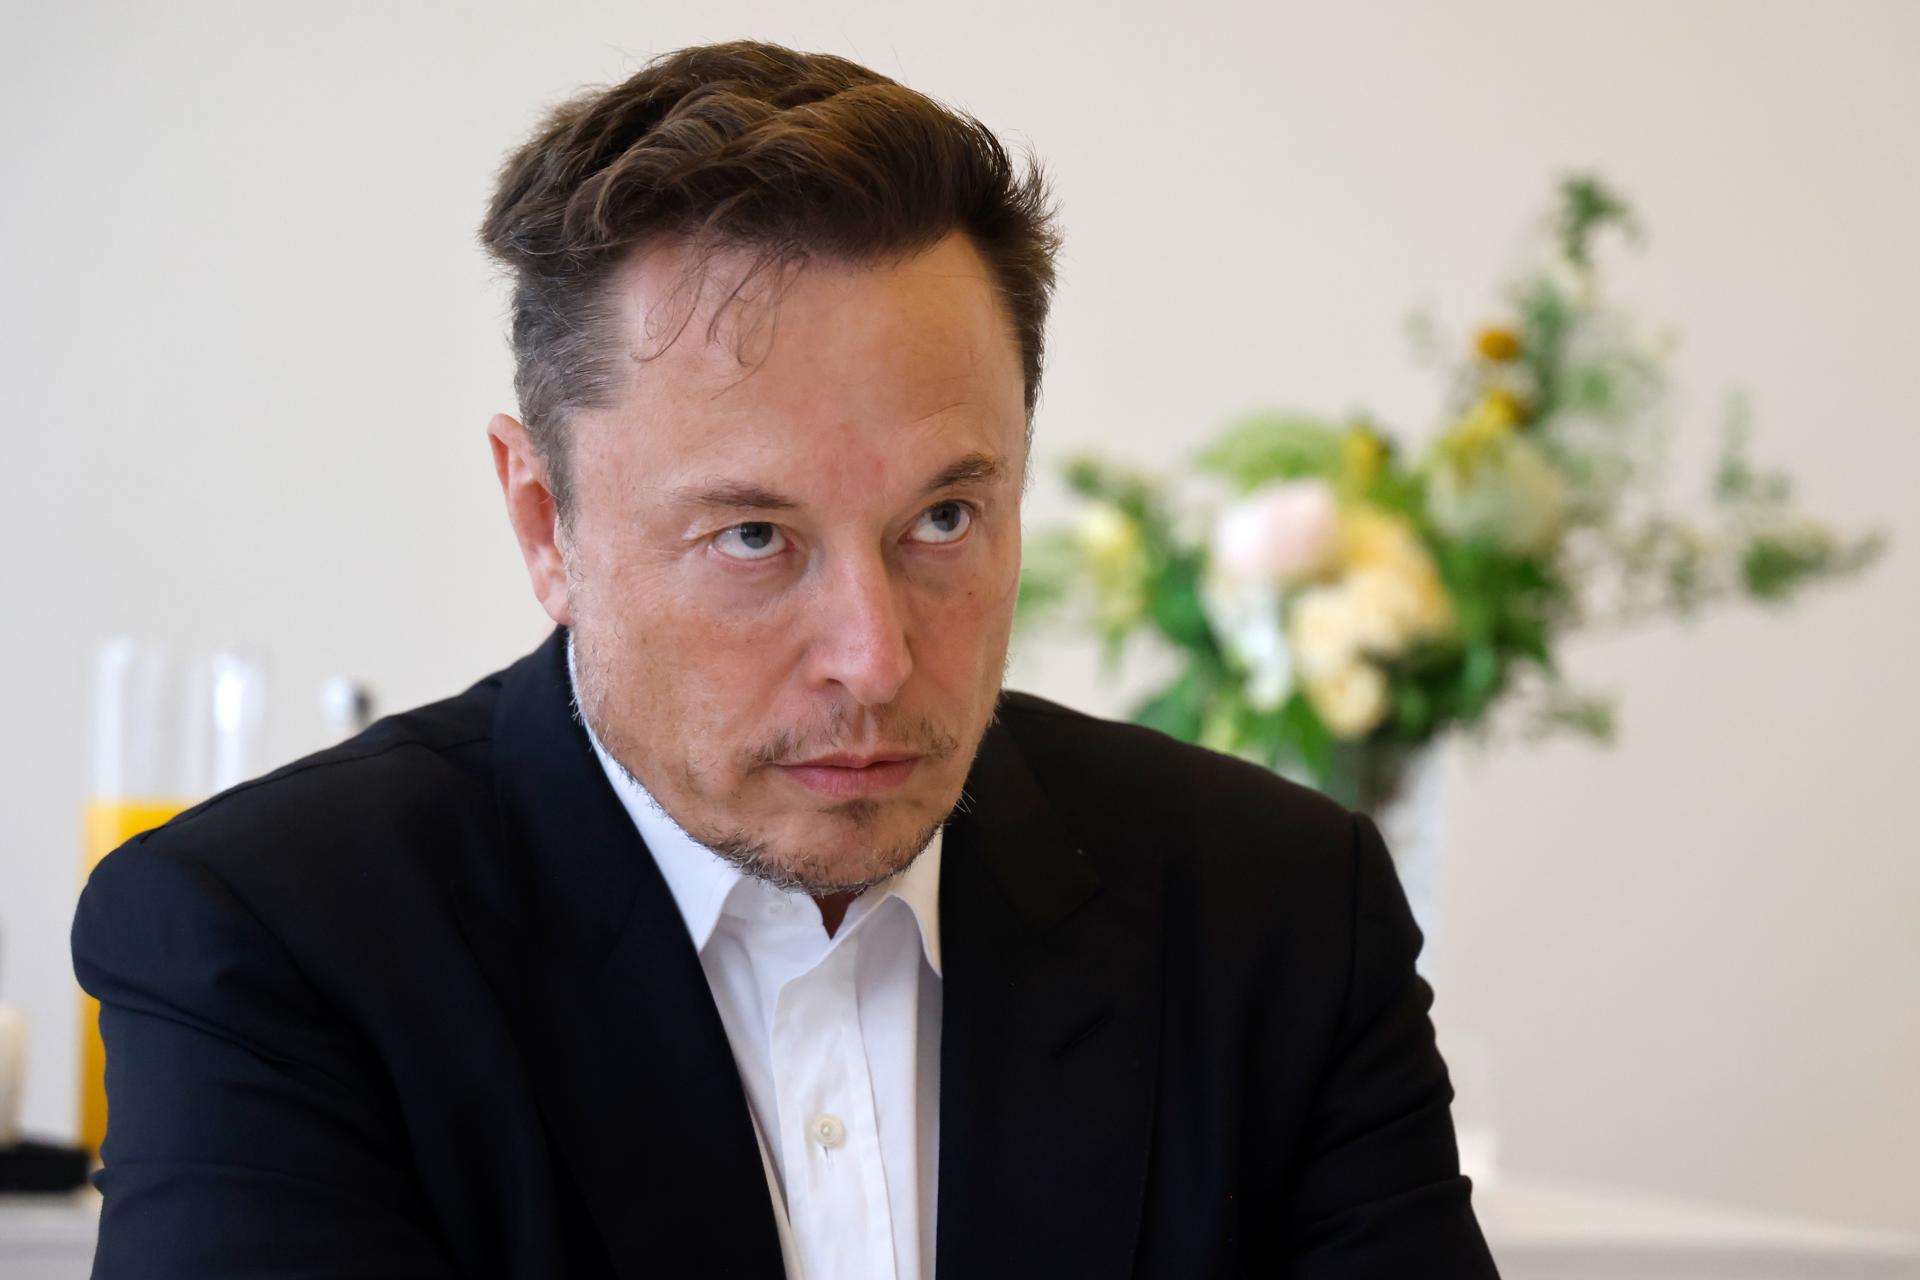 El empresario Elon Musk, propietario de Twitter, fotografía de archivo. EFE/EPA/LUDOVIC MARIN / POOL MAXPPP OUT
